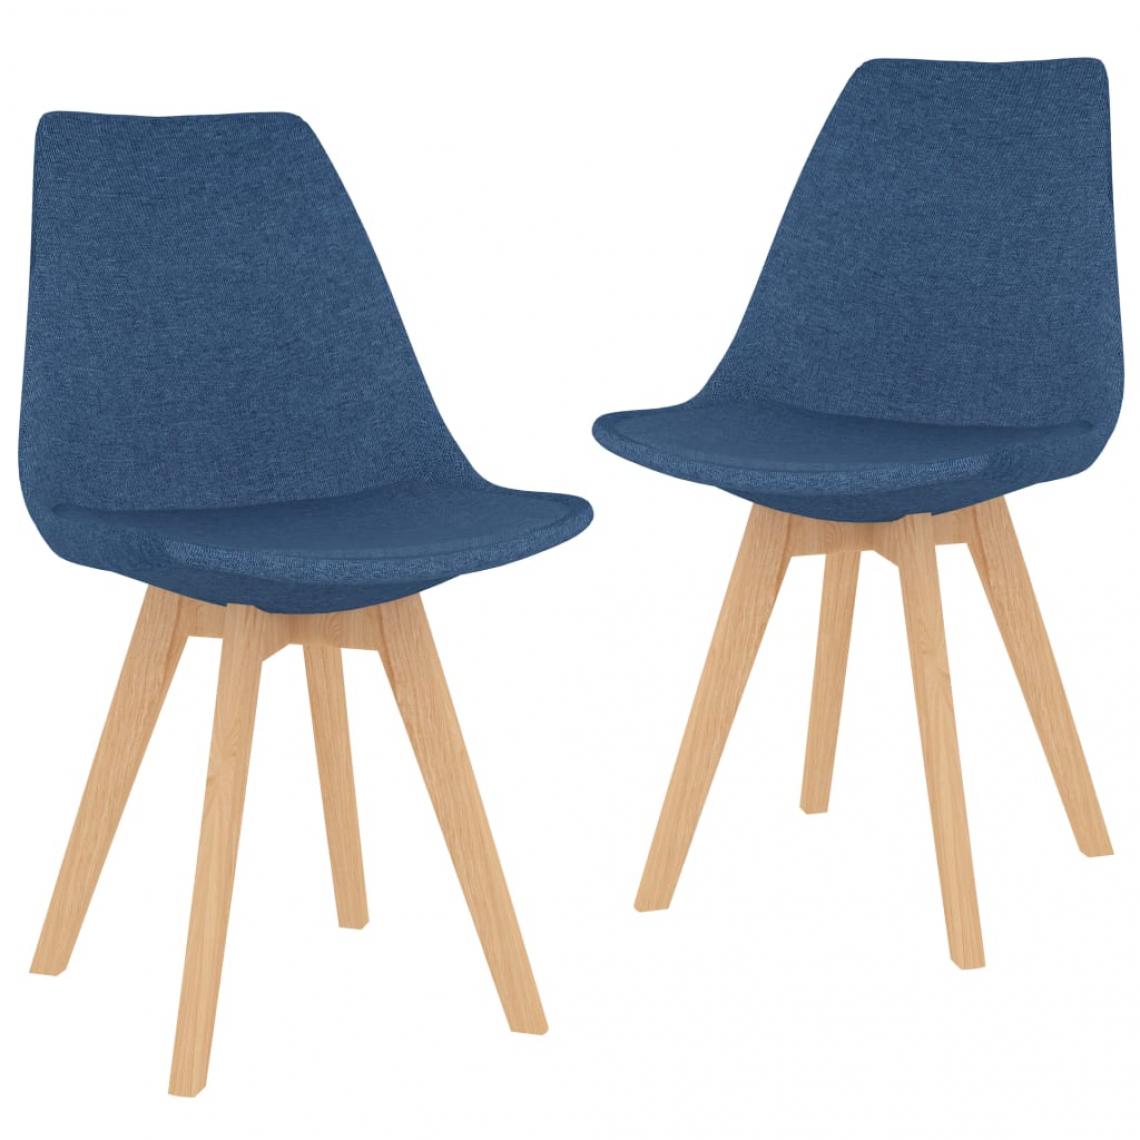 Decoshop26 - Lot de 2 chaises de salle à manger cuisine design moderne tissu bleu CDS020250 - Chaises